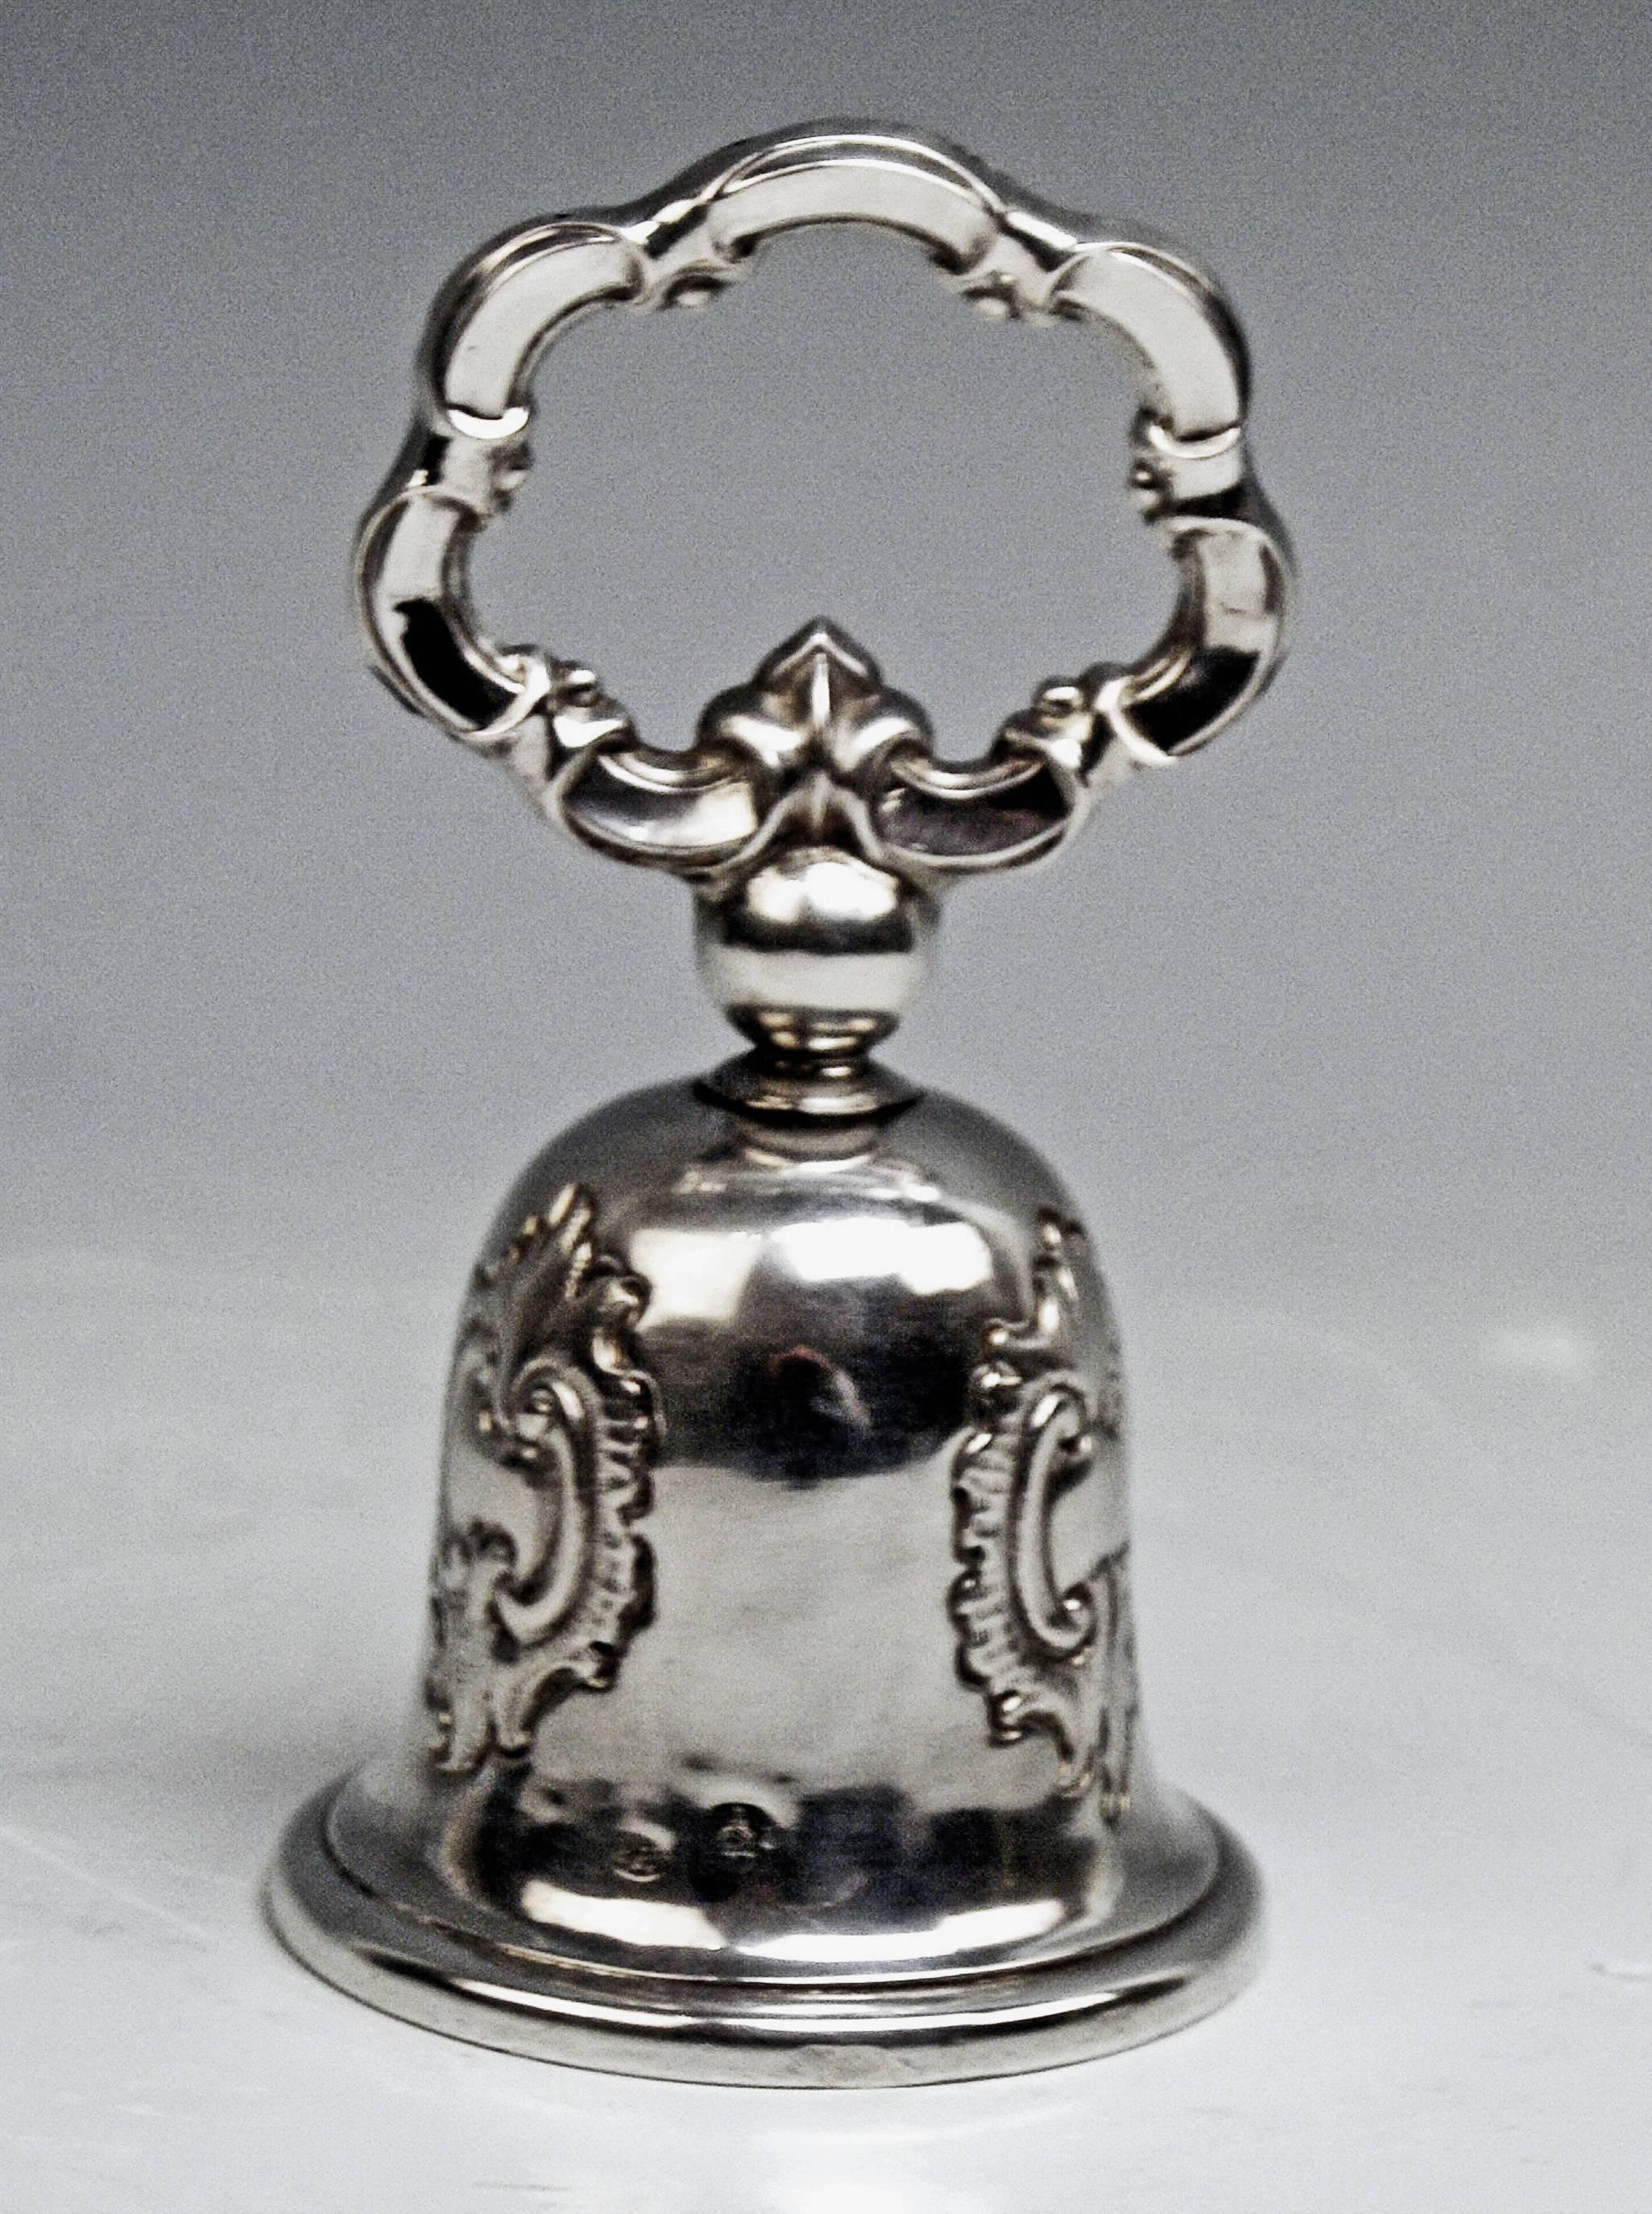 Austrian Silver 13 Lot Table Bell Vintage Biedermeier Period Vienna Peter Stubenrauch